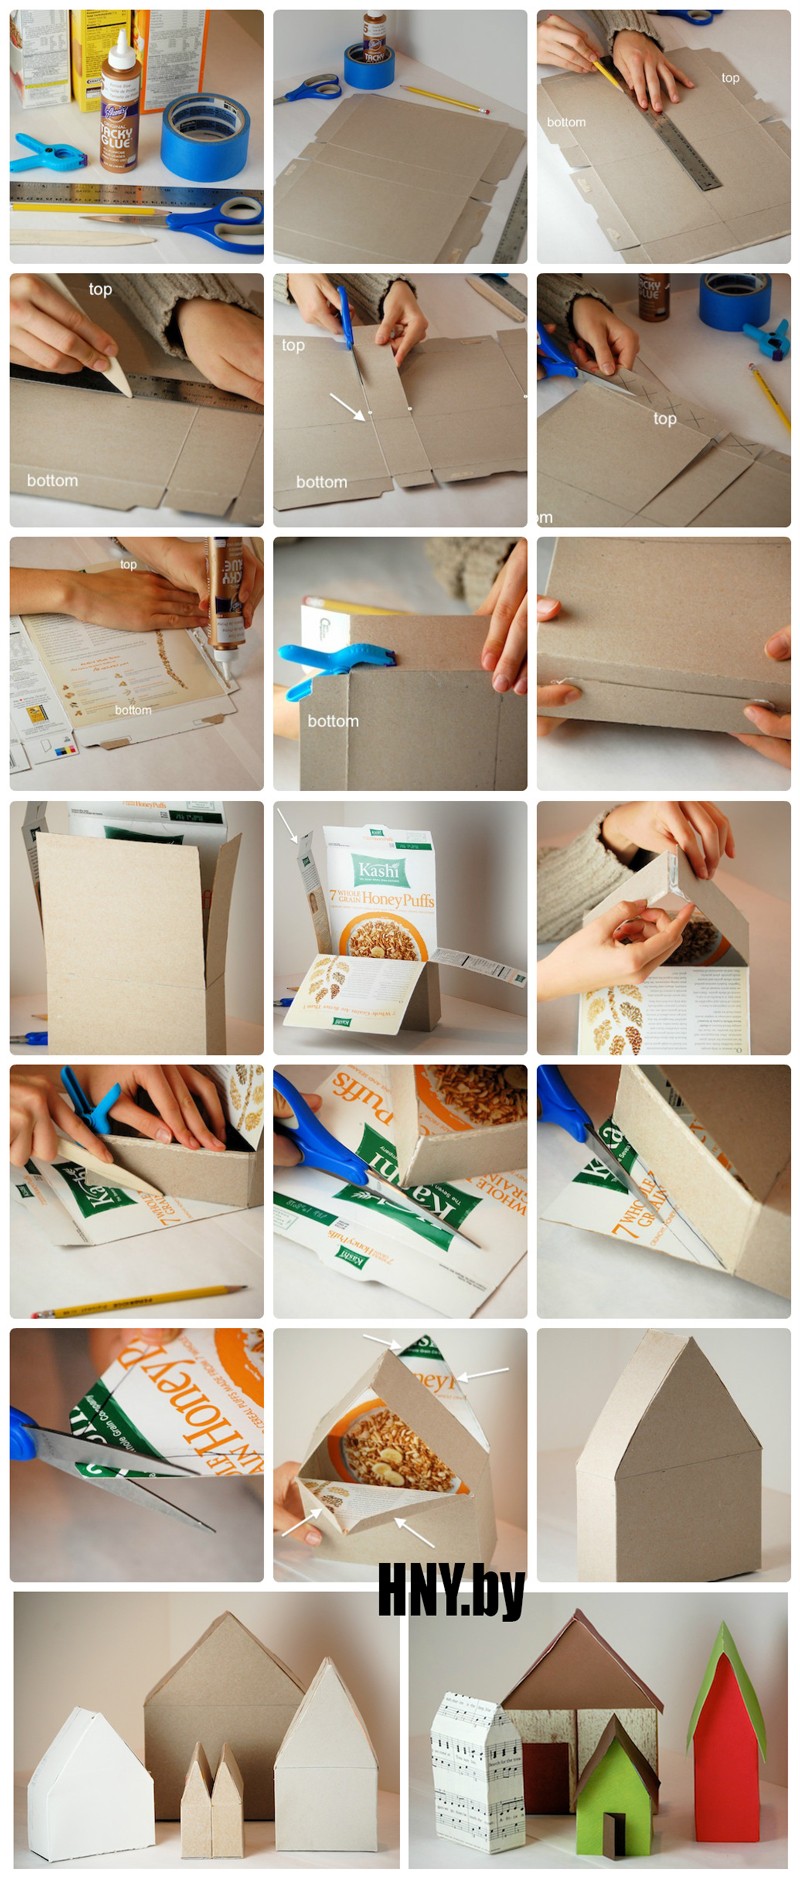 Домик из коробки своими руками, новогодние поделки из подручных материалов